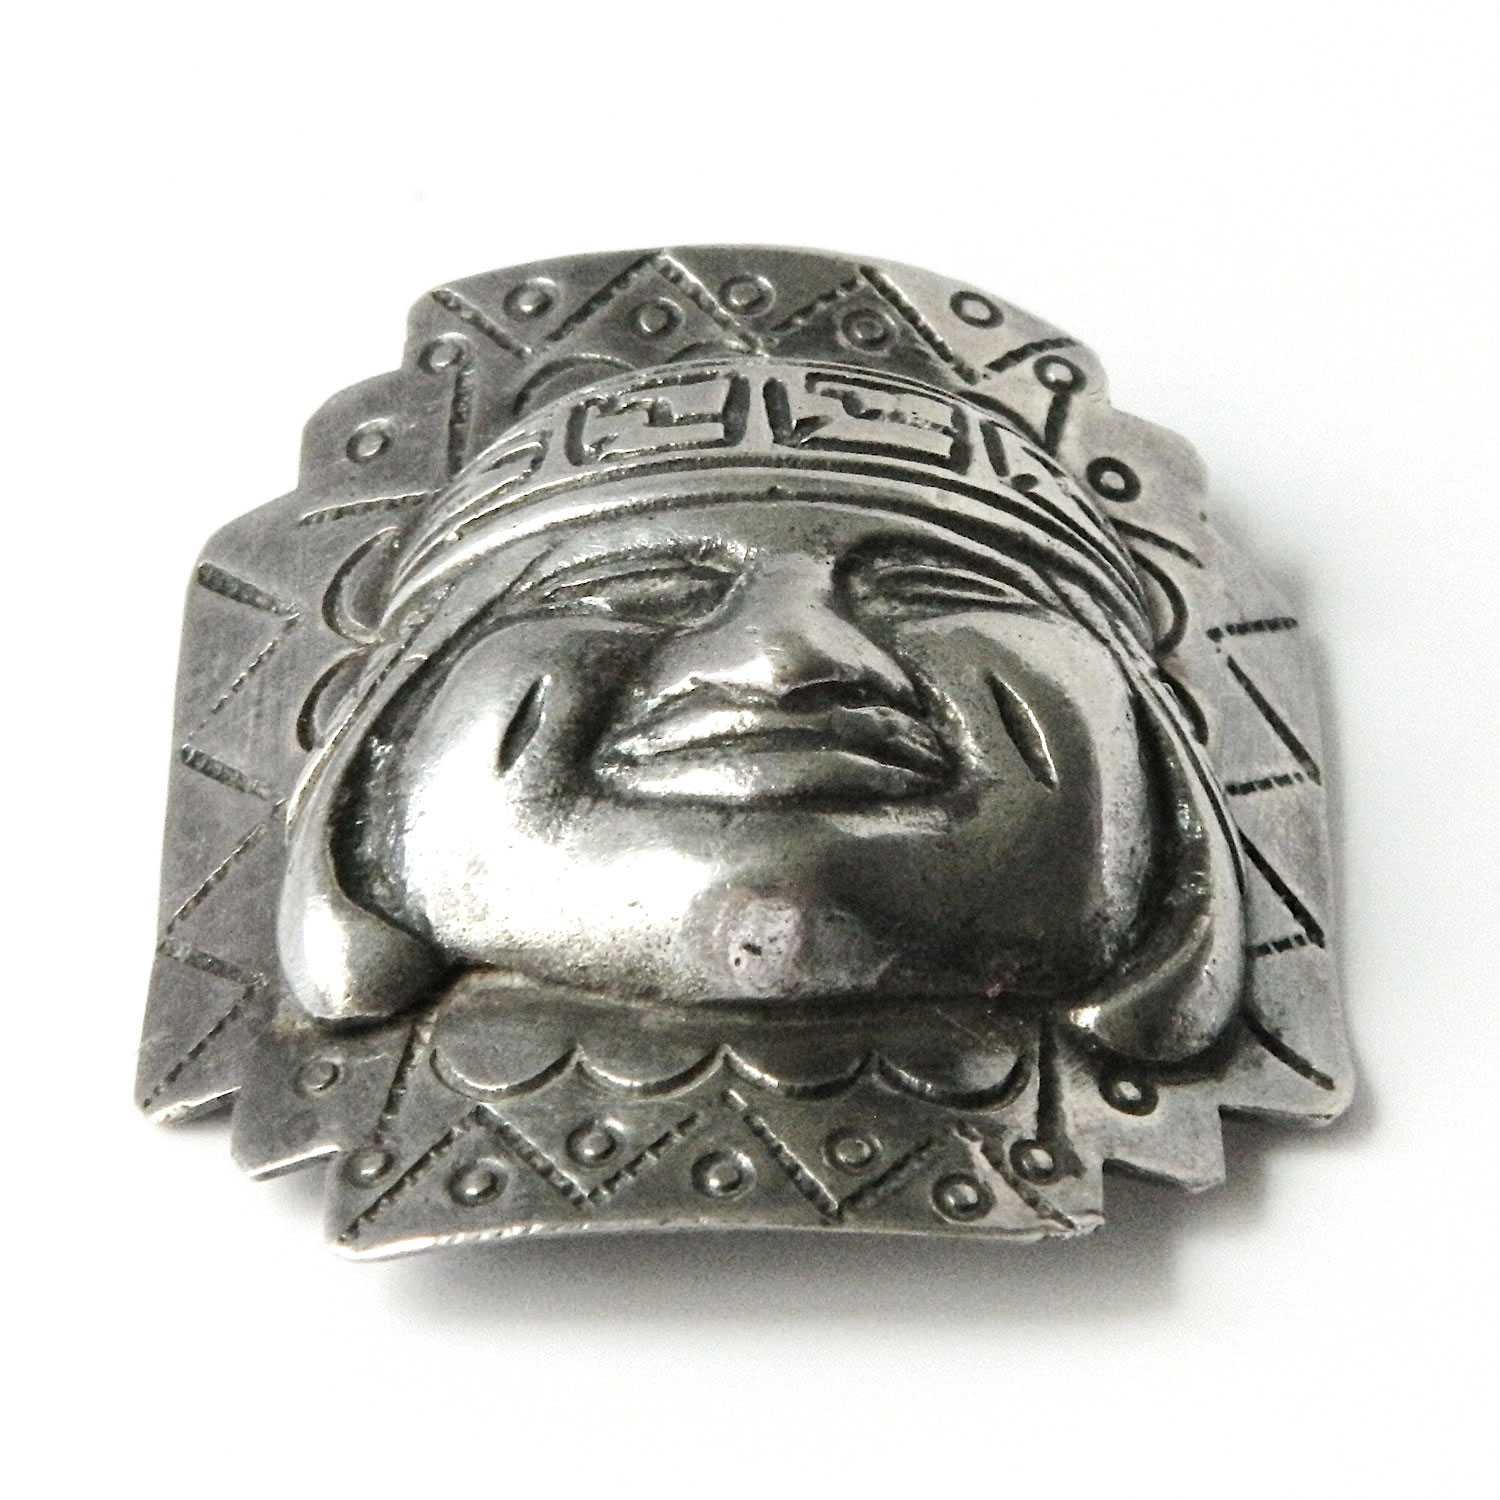 Vintage Peruvian silver brooch